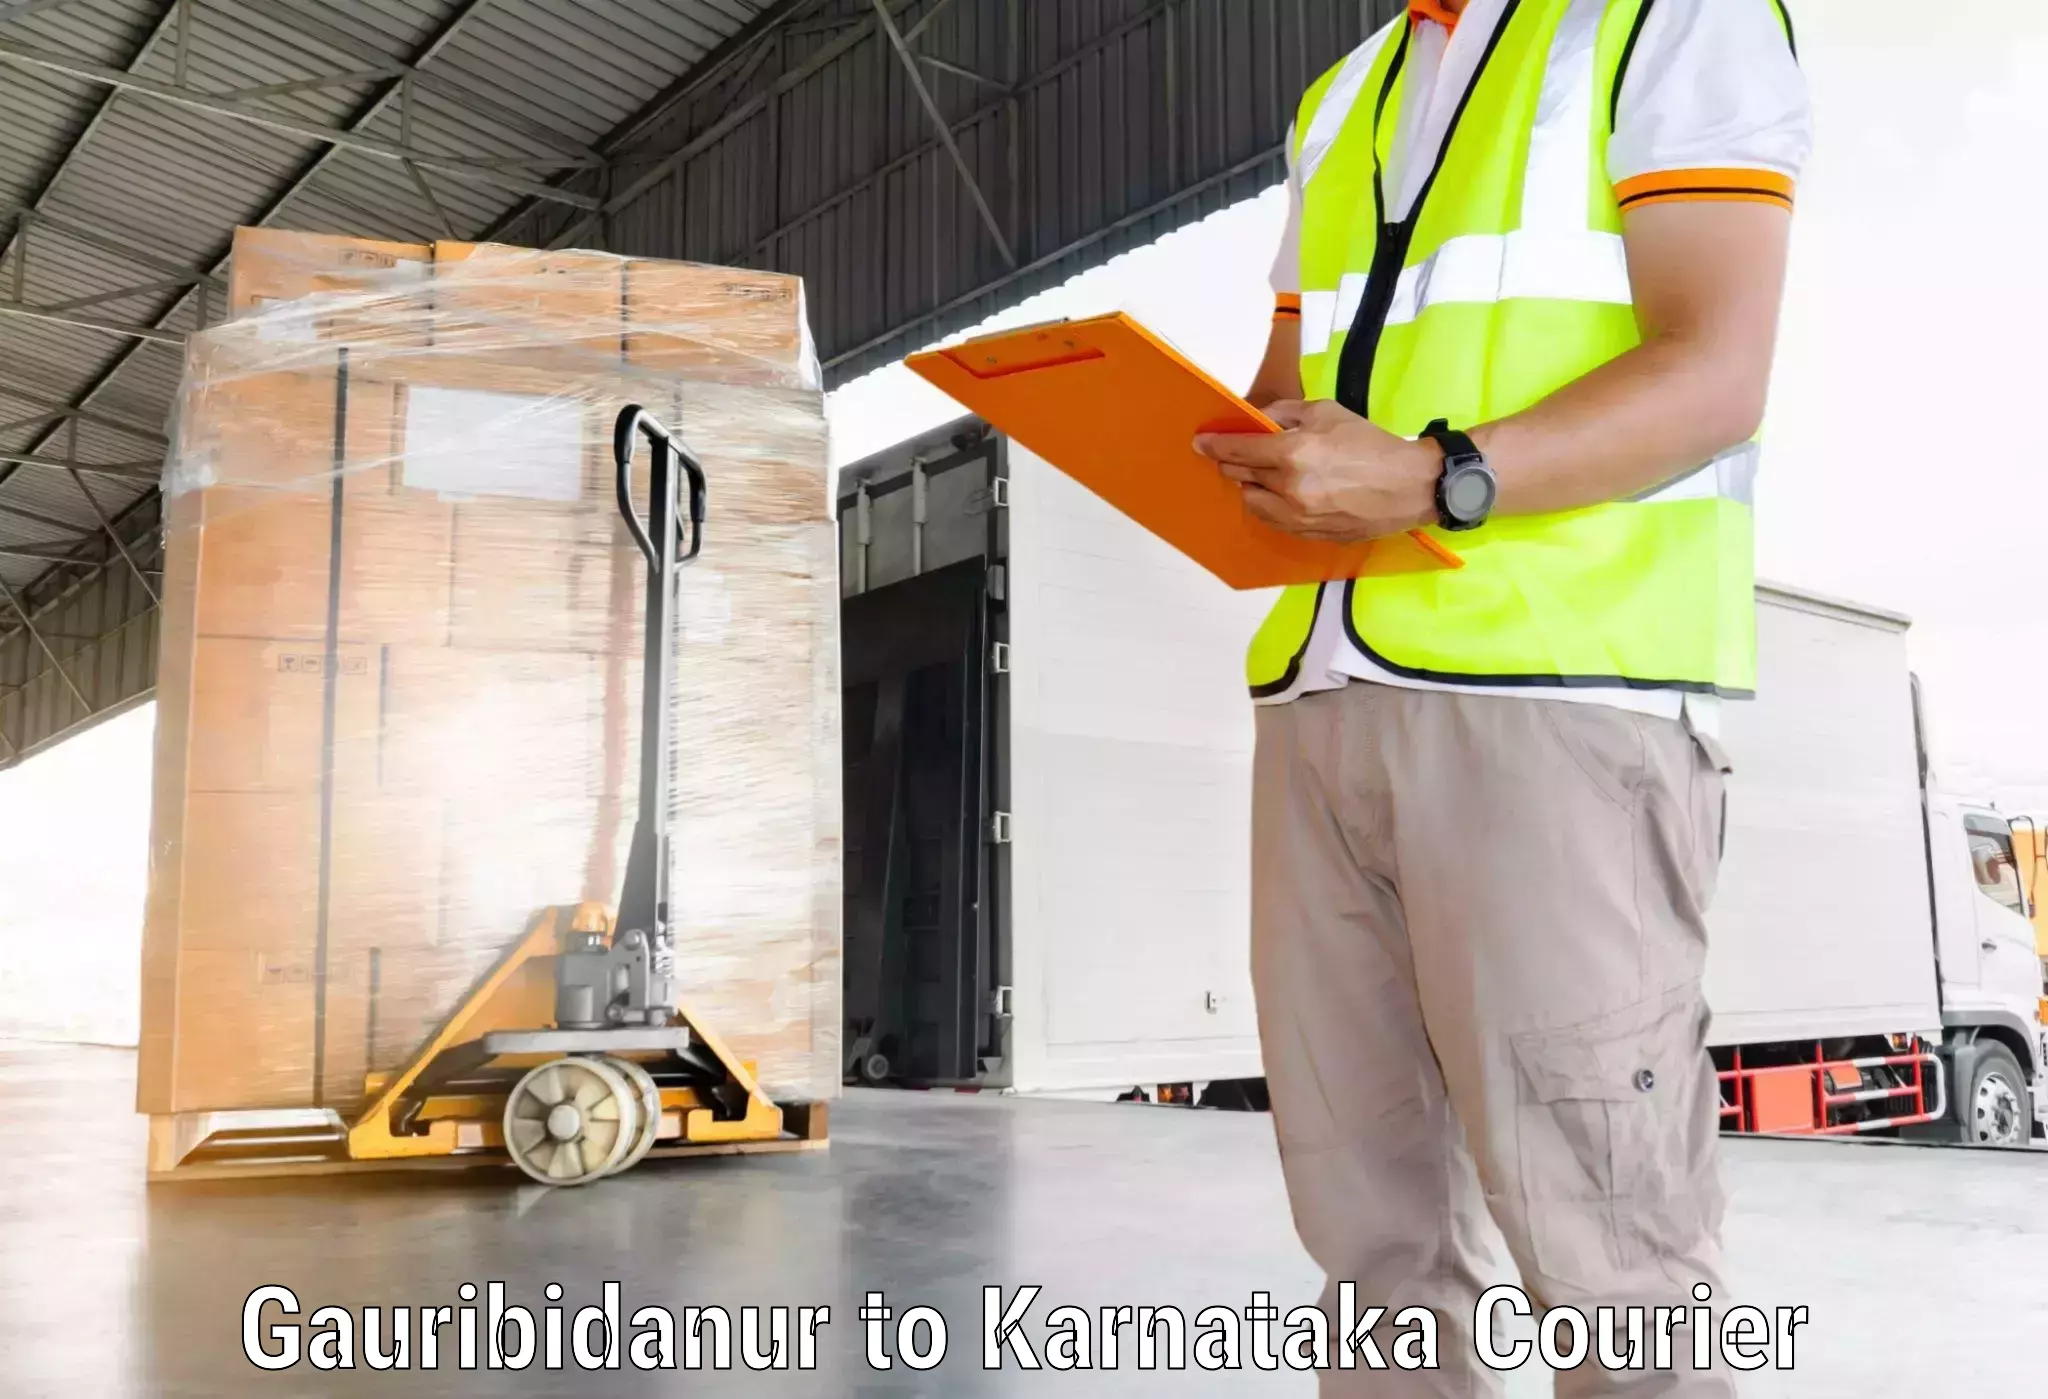 High-speed parcel service Gauribidanur to Mandya